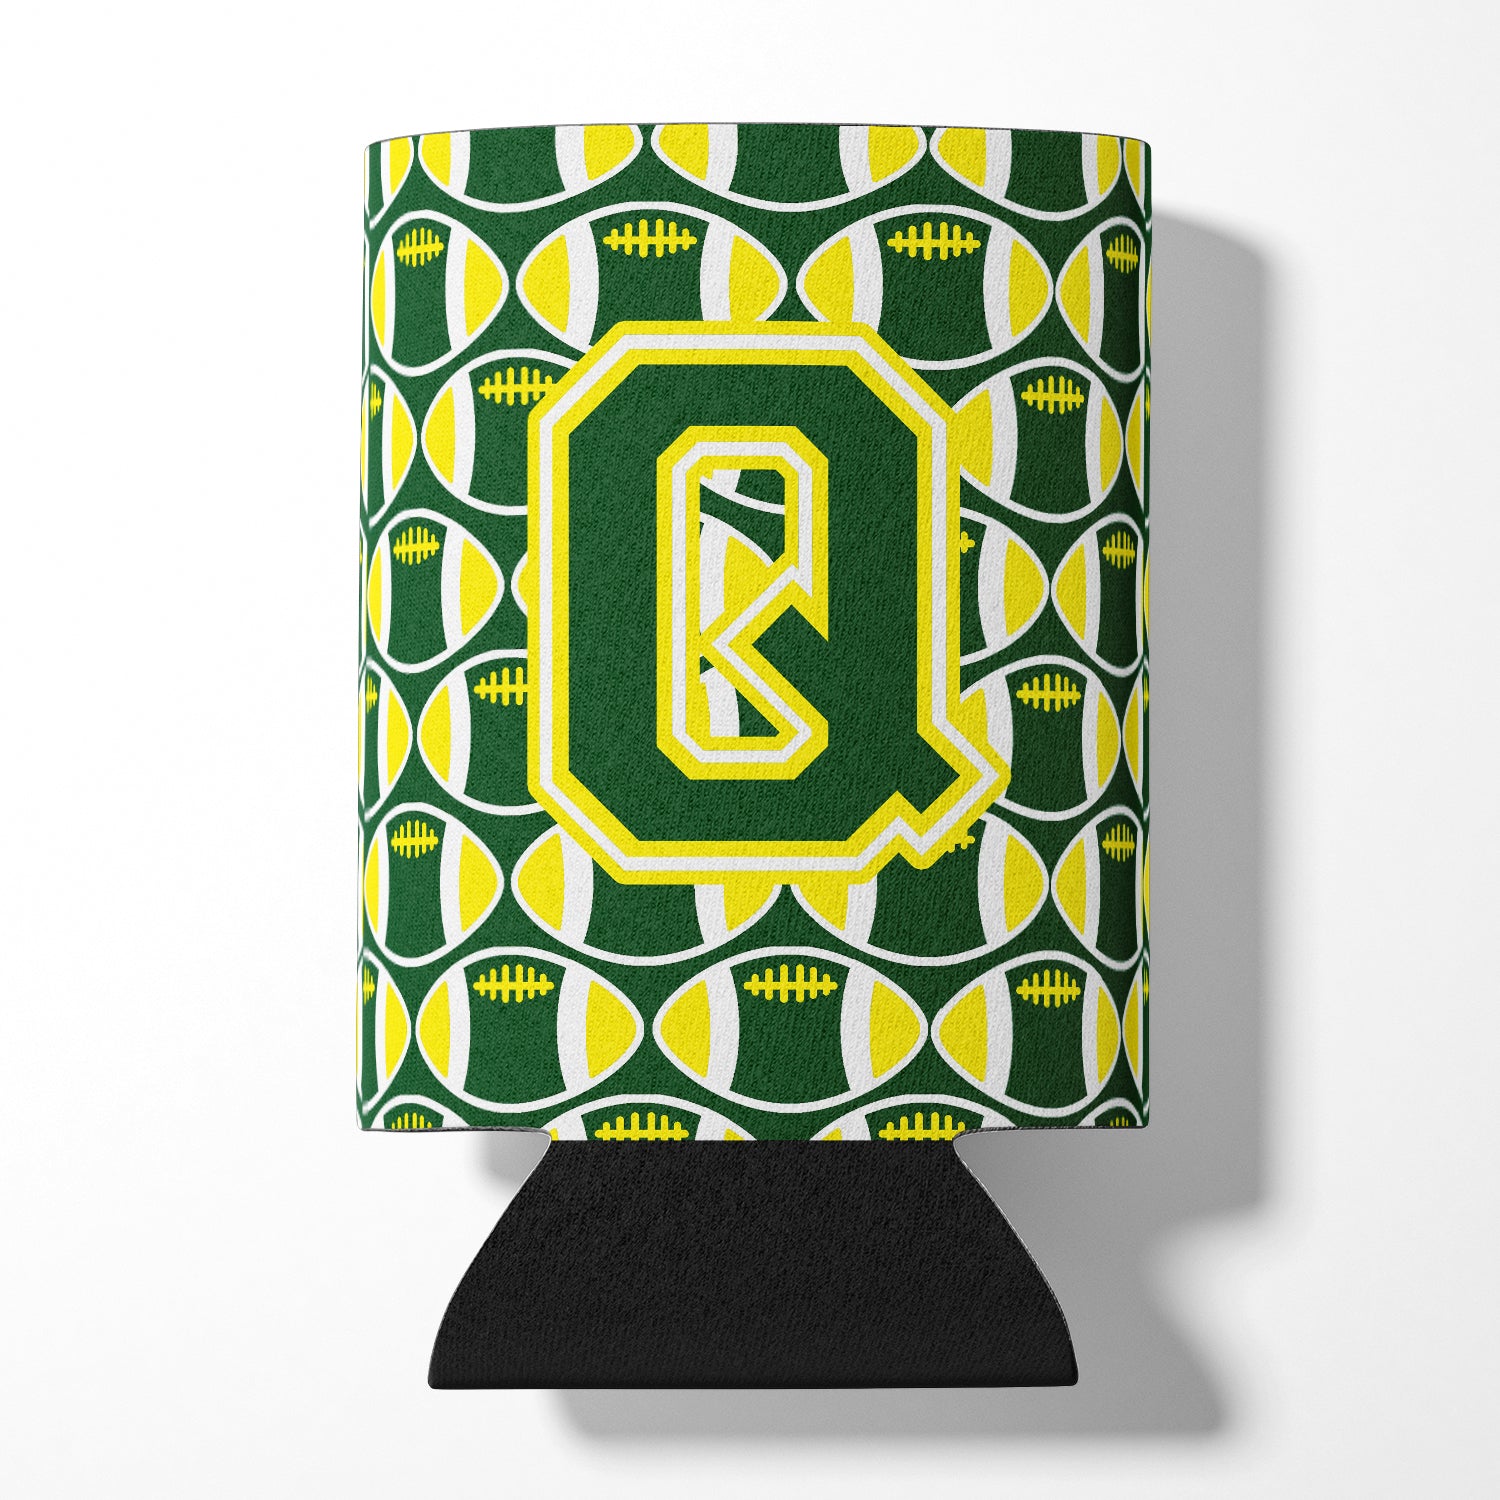 Lettre Q Football vert et jaune Porte-canette ou porte-bouteille CJ1075-QCC